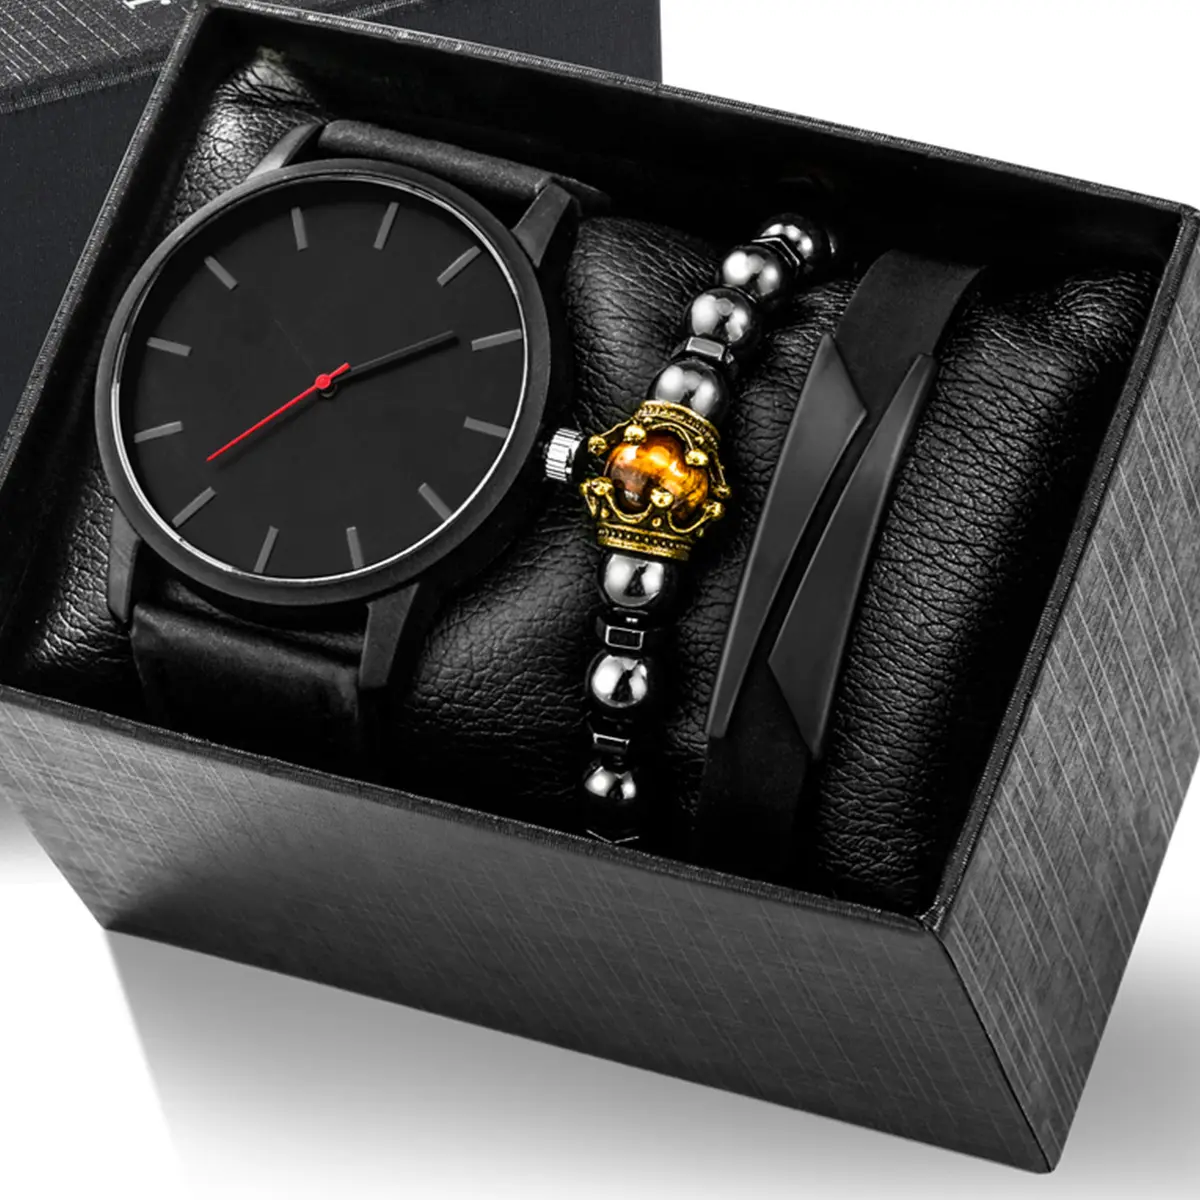 3 unid/set nuevo reloj masculino, reloj de pulsera de cuarzo de negocios informal de lujo para hombres, conjunto de pulsera de cuero para hombres, regalos originales para hombres